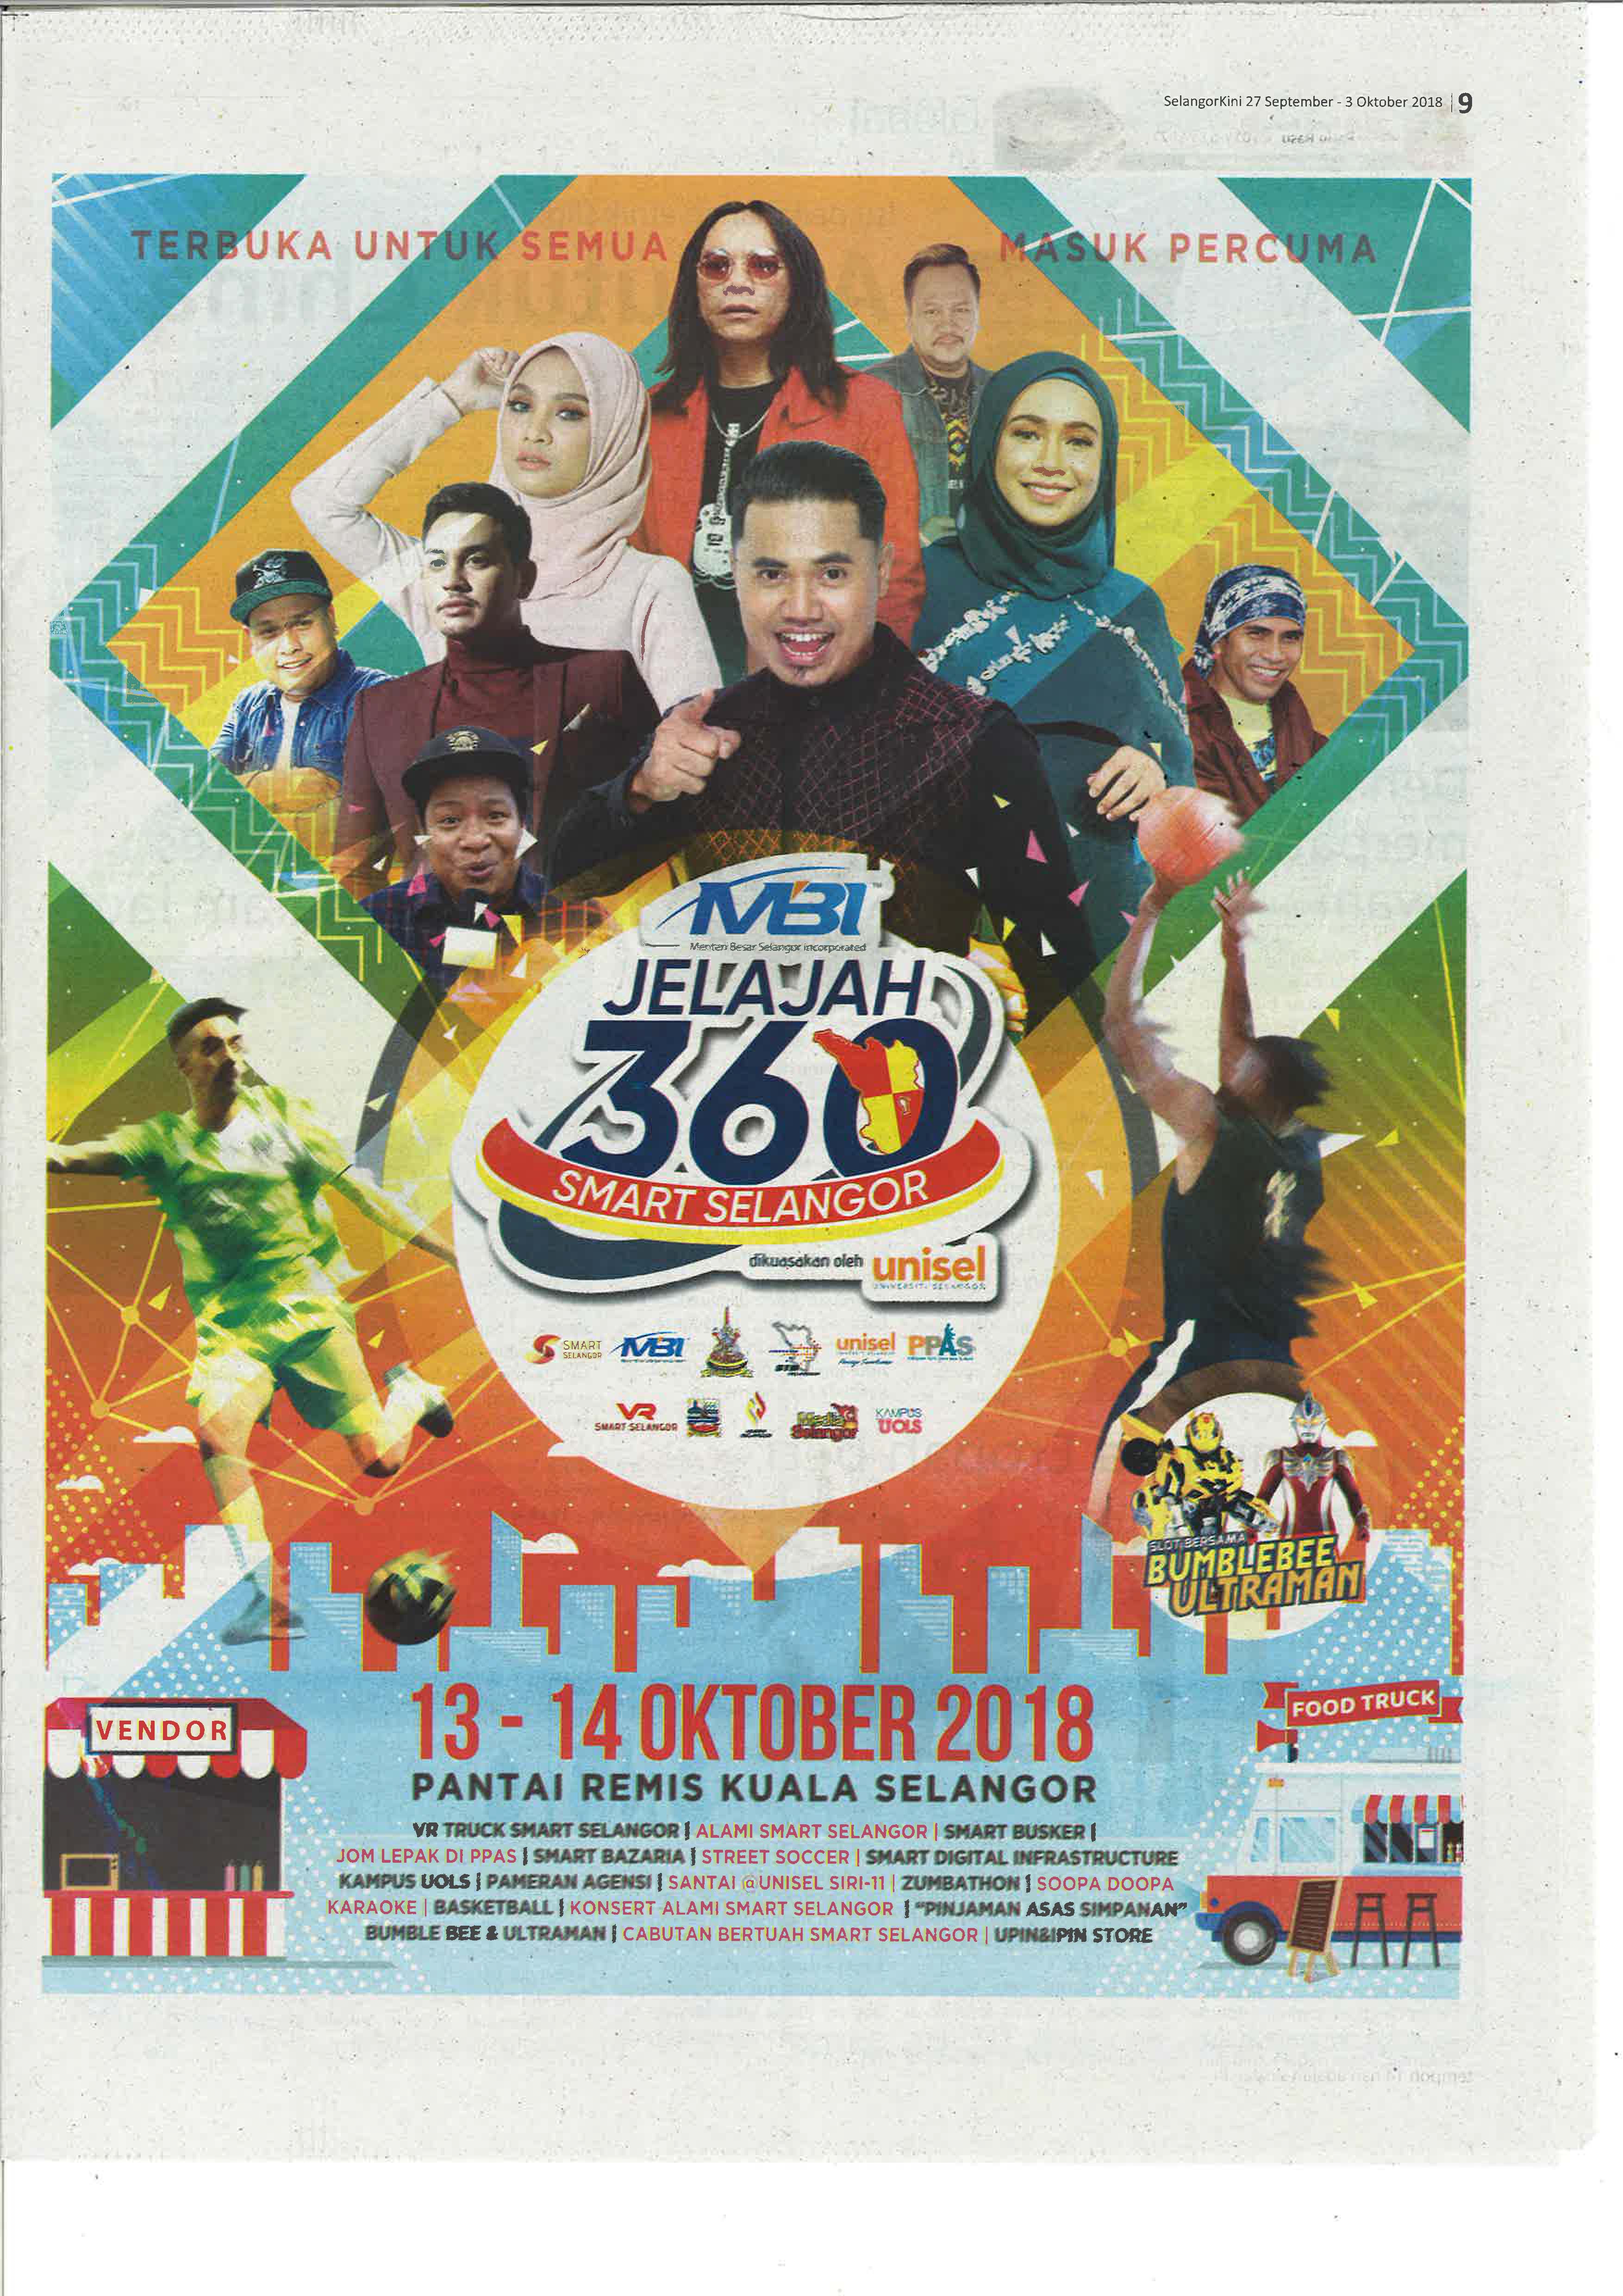 Selangor Kini - 27 September 2018